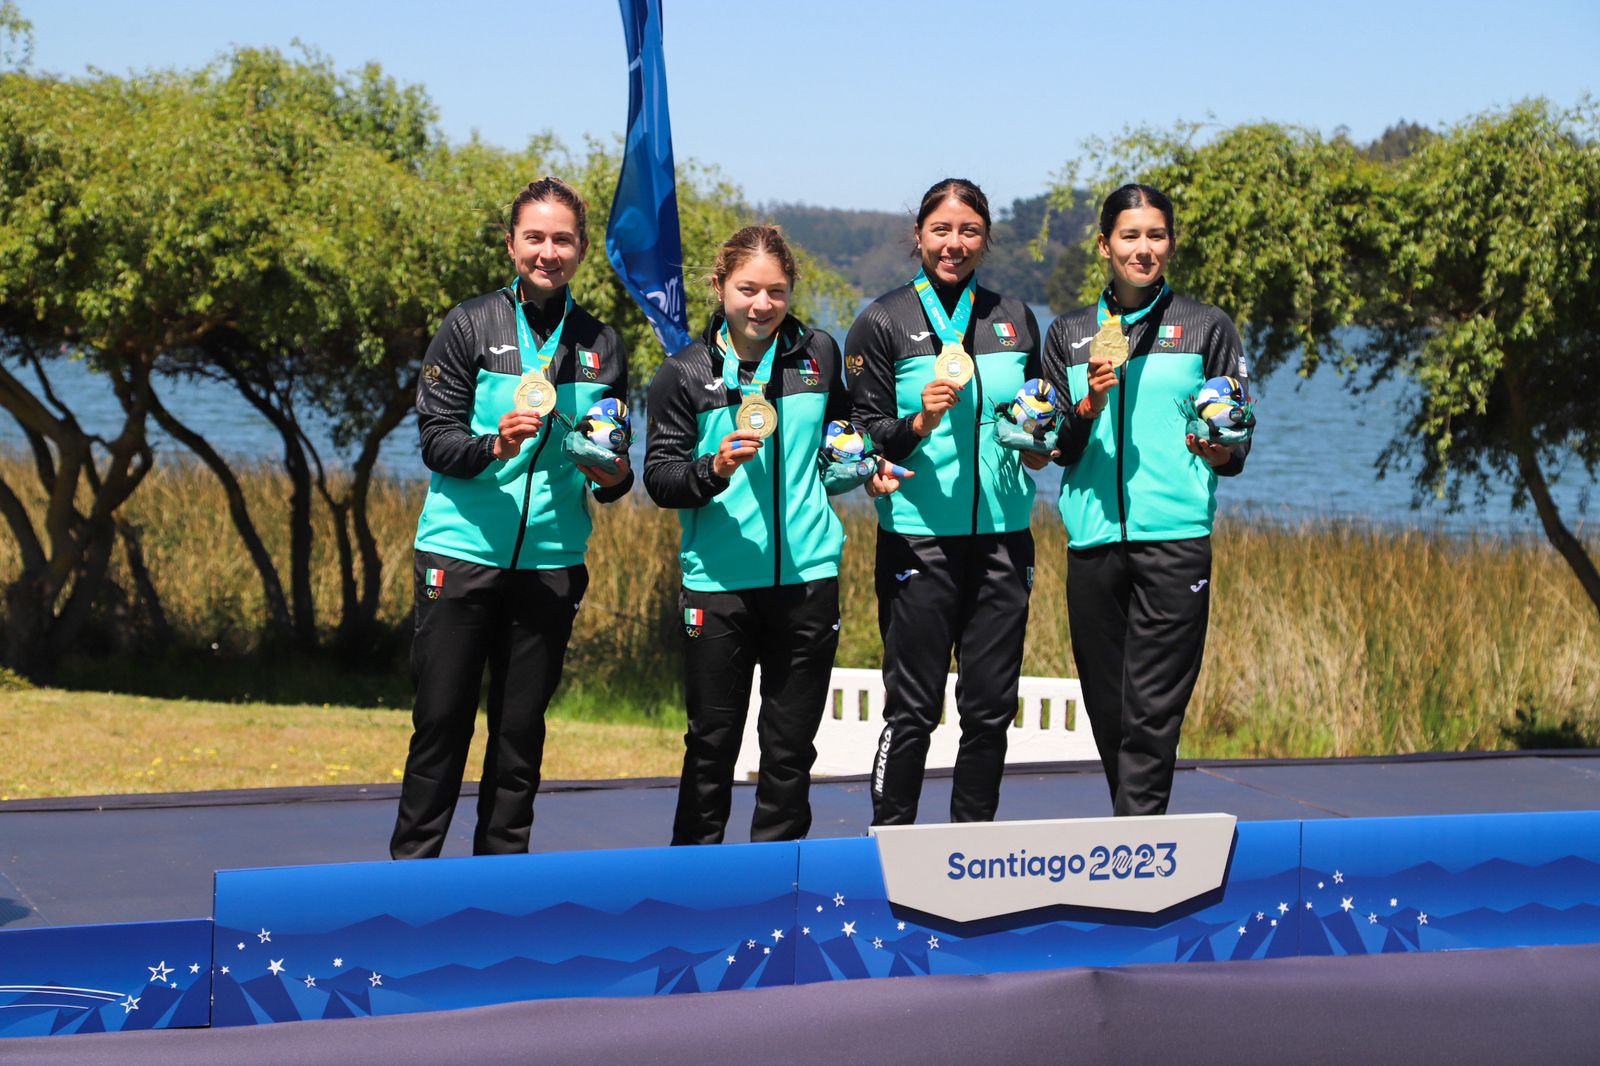 De izquierda a derecha: Maricela Montemayor, Beatriz Briones, Brenda Gutiérrez y Karina Alanís, con su medalla de oro en Santiago 2023.
